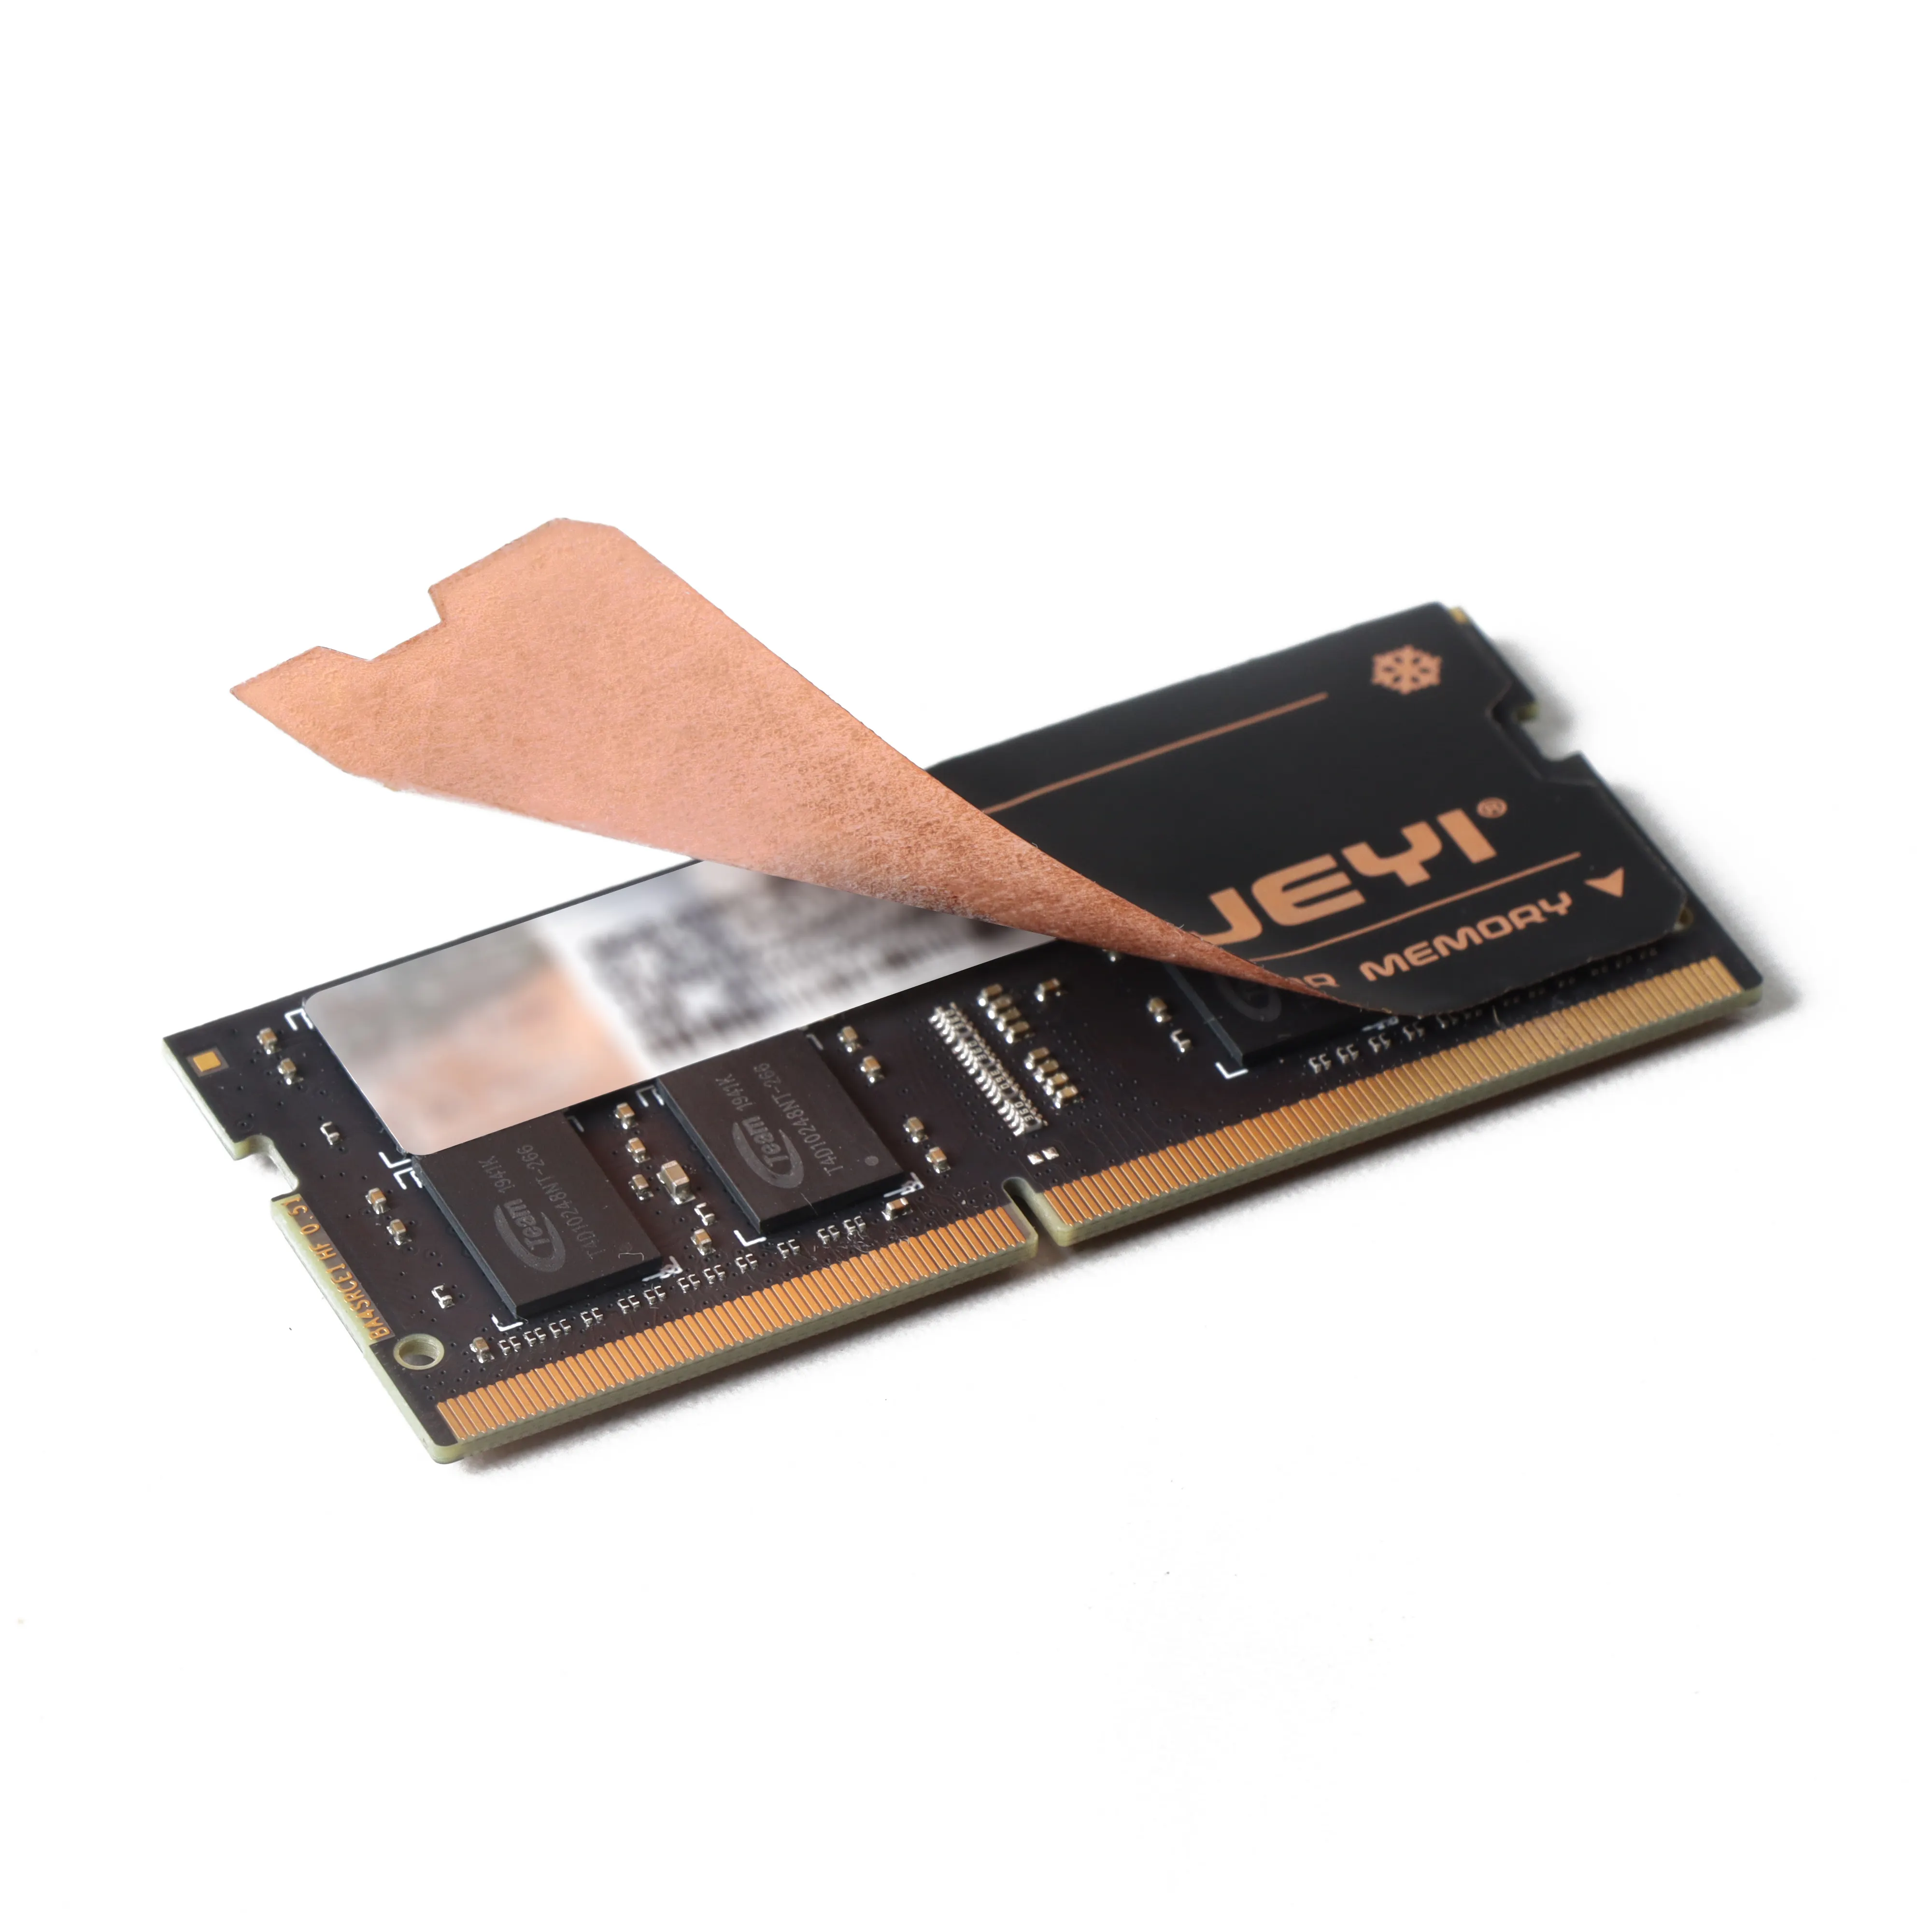 DDR5 DDR2 DDR3 DDR4 NGFF Graphen Kupfer folie RAM Wärme ableitung Kühlkörper Kühler Kühlung Kühlkörper Kühler